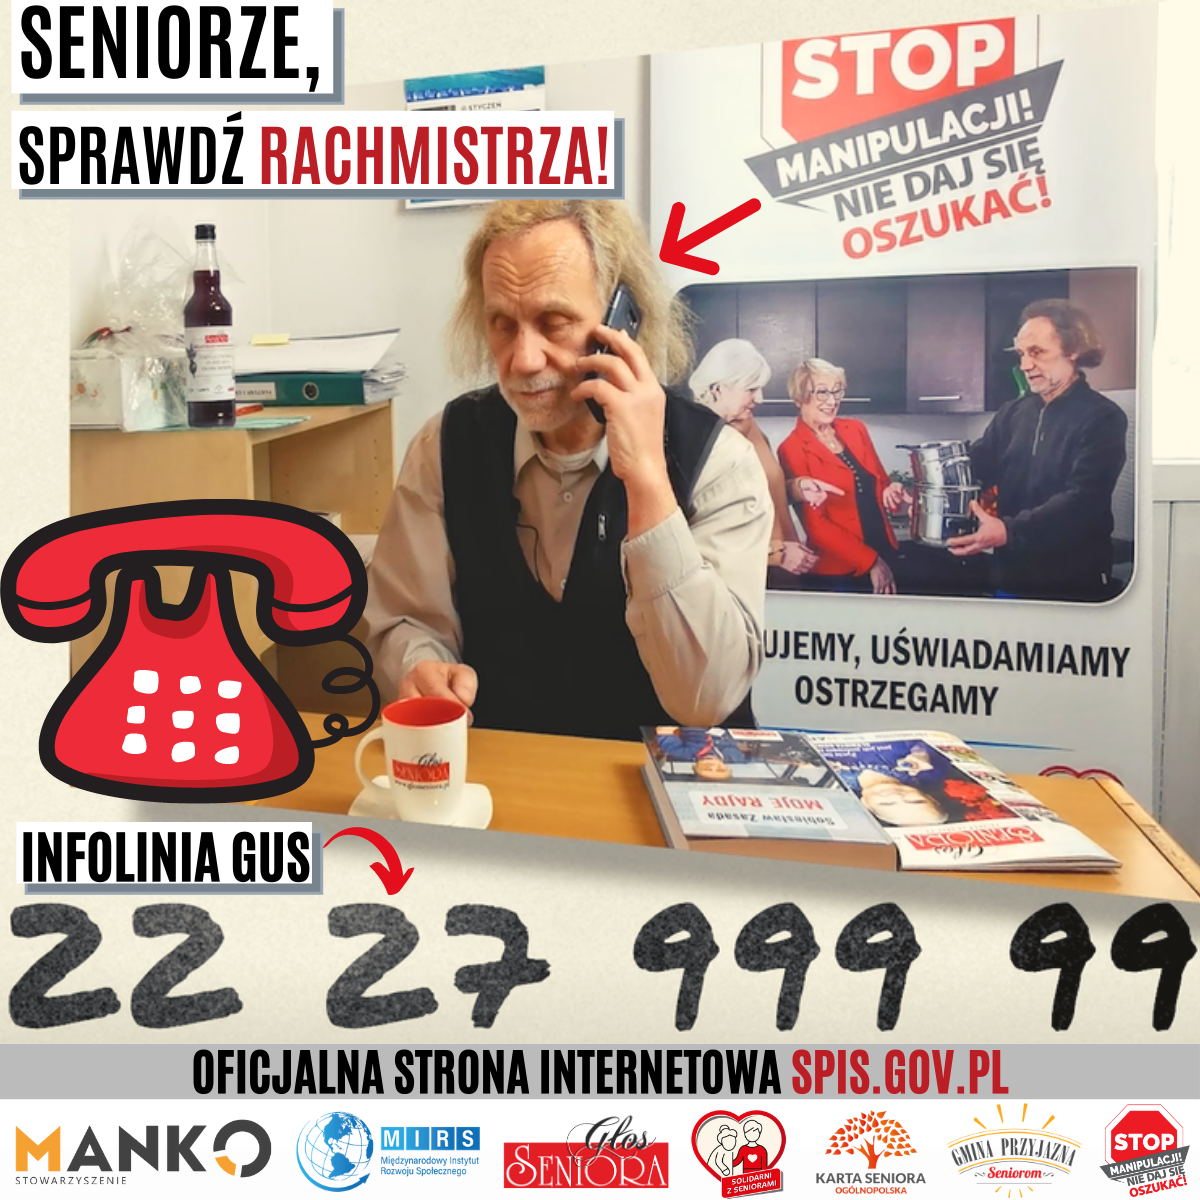 Zdjęcie przedstawia seniora dzwoniącego na numer 222799999, gdzie może sprawdzić czy osoba podająca się za rachmistrza jest nim w rzeczywistości